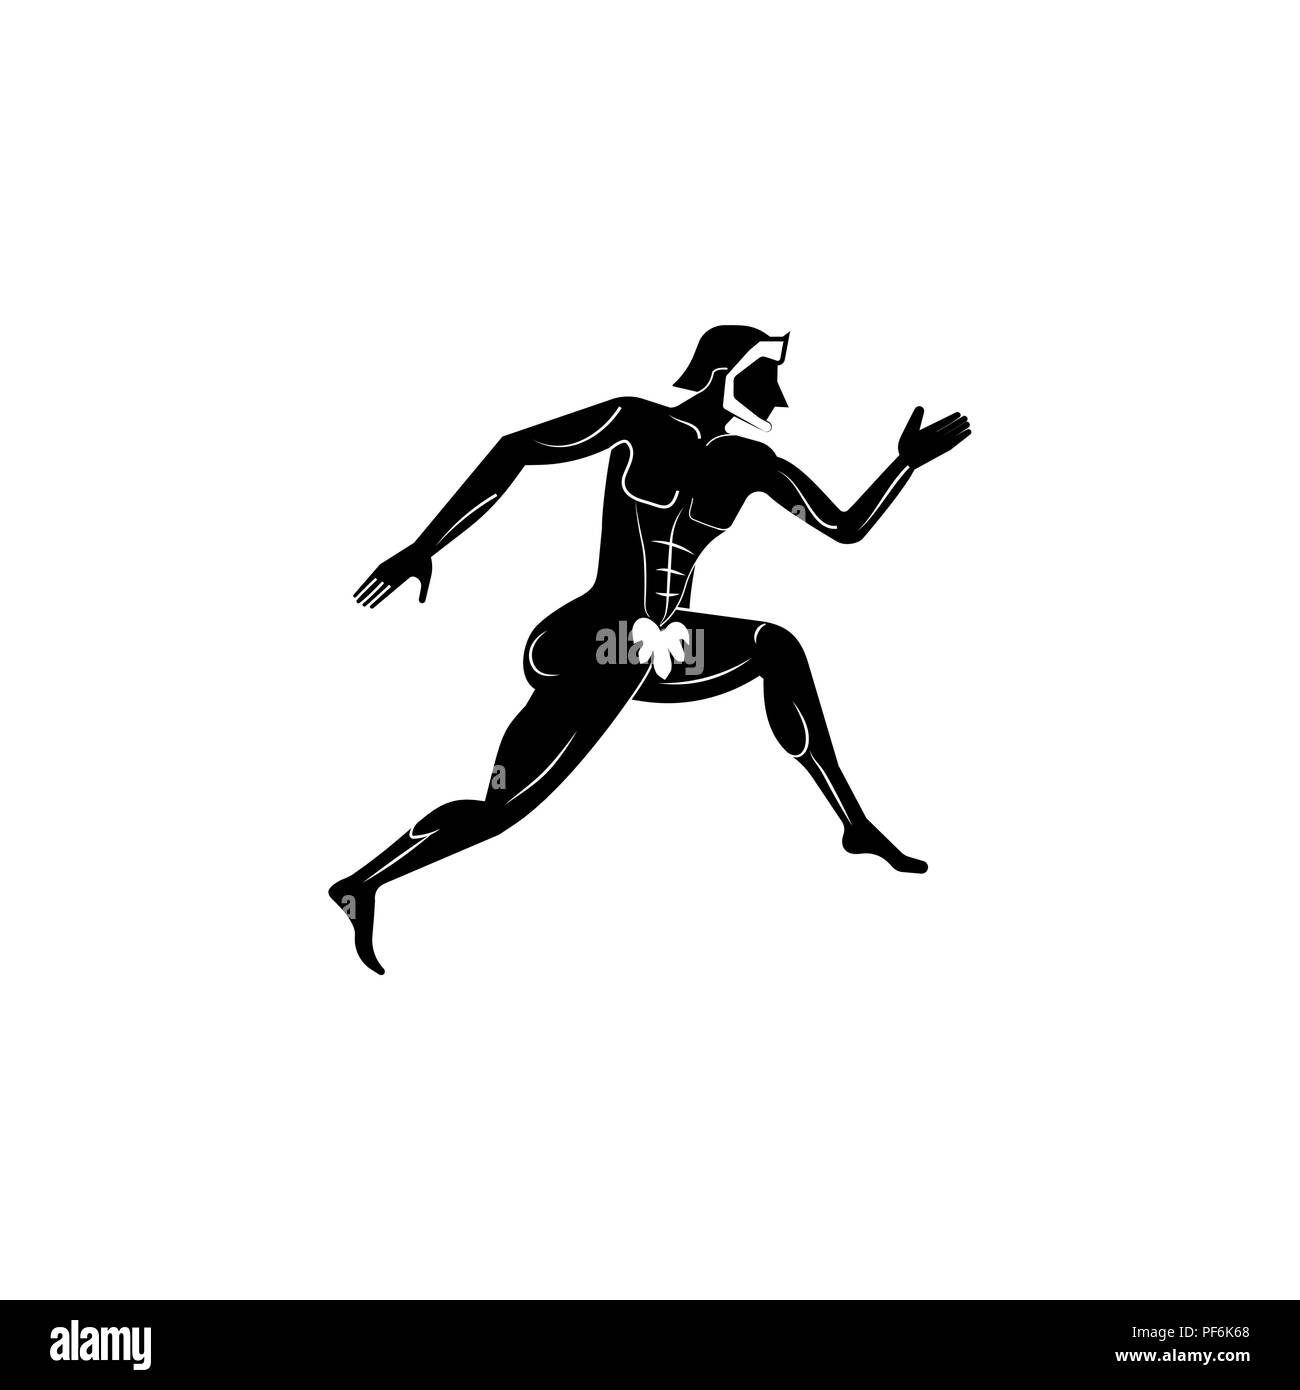 Athlete icon. Greek Athlete icon black on white background Stock